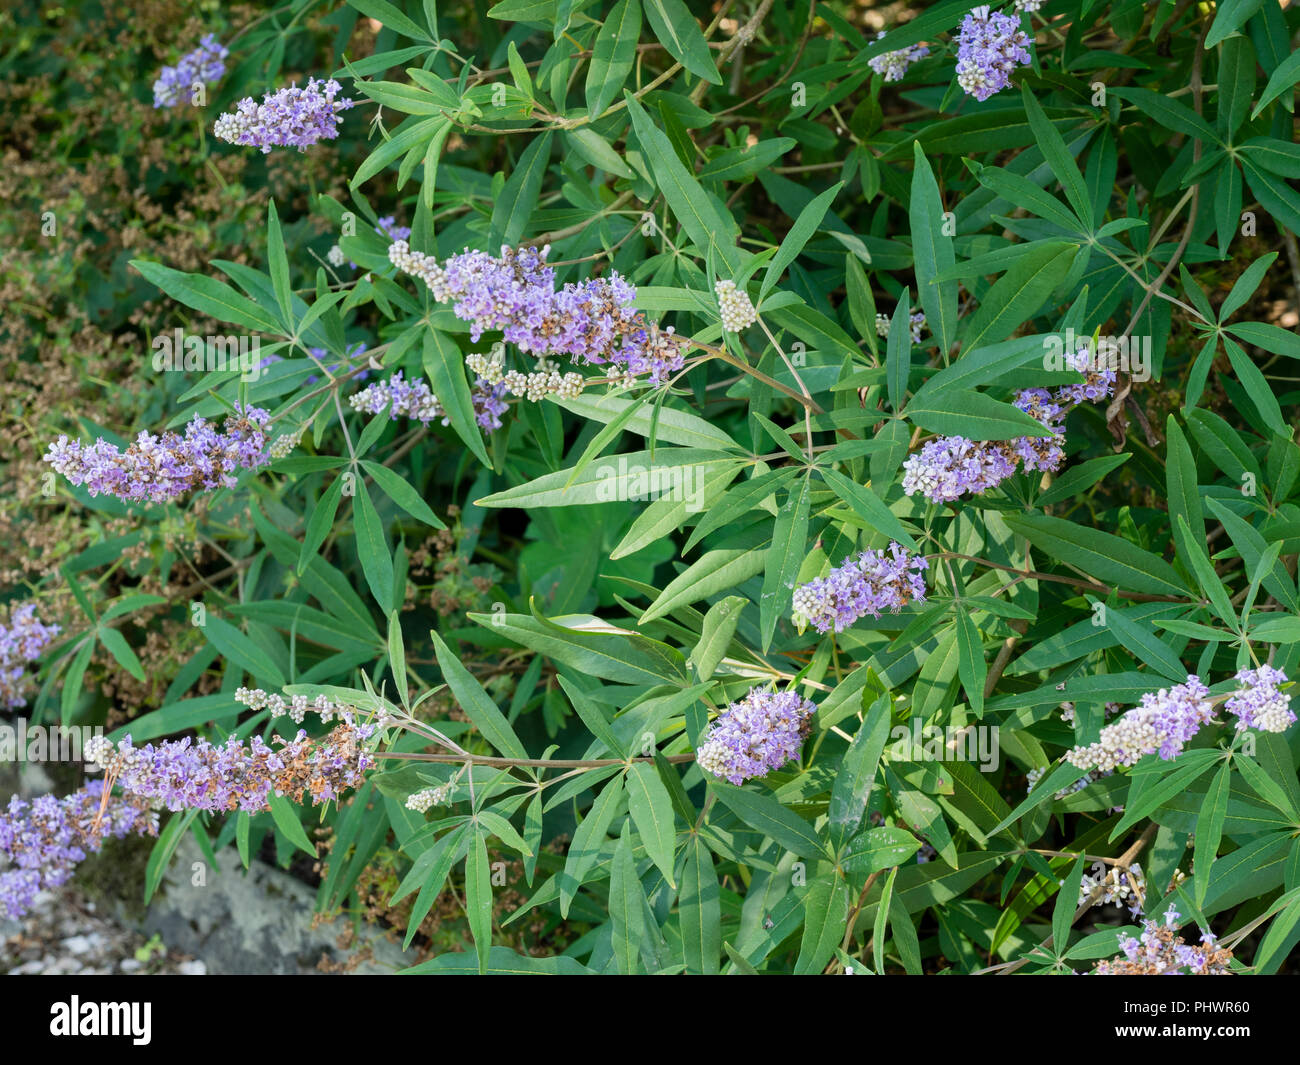 La fin de l'été panicules de fleurs bleu entre le feuillage aromatique du gattilier, Vitex agnus-castus Banque D'Images